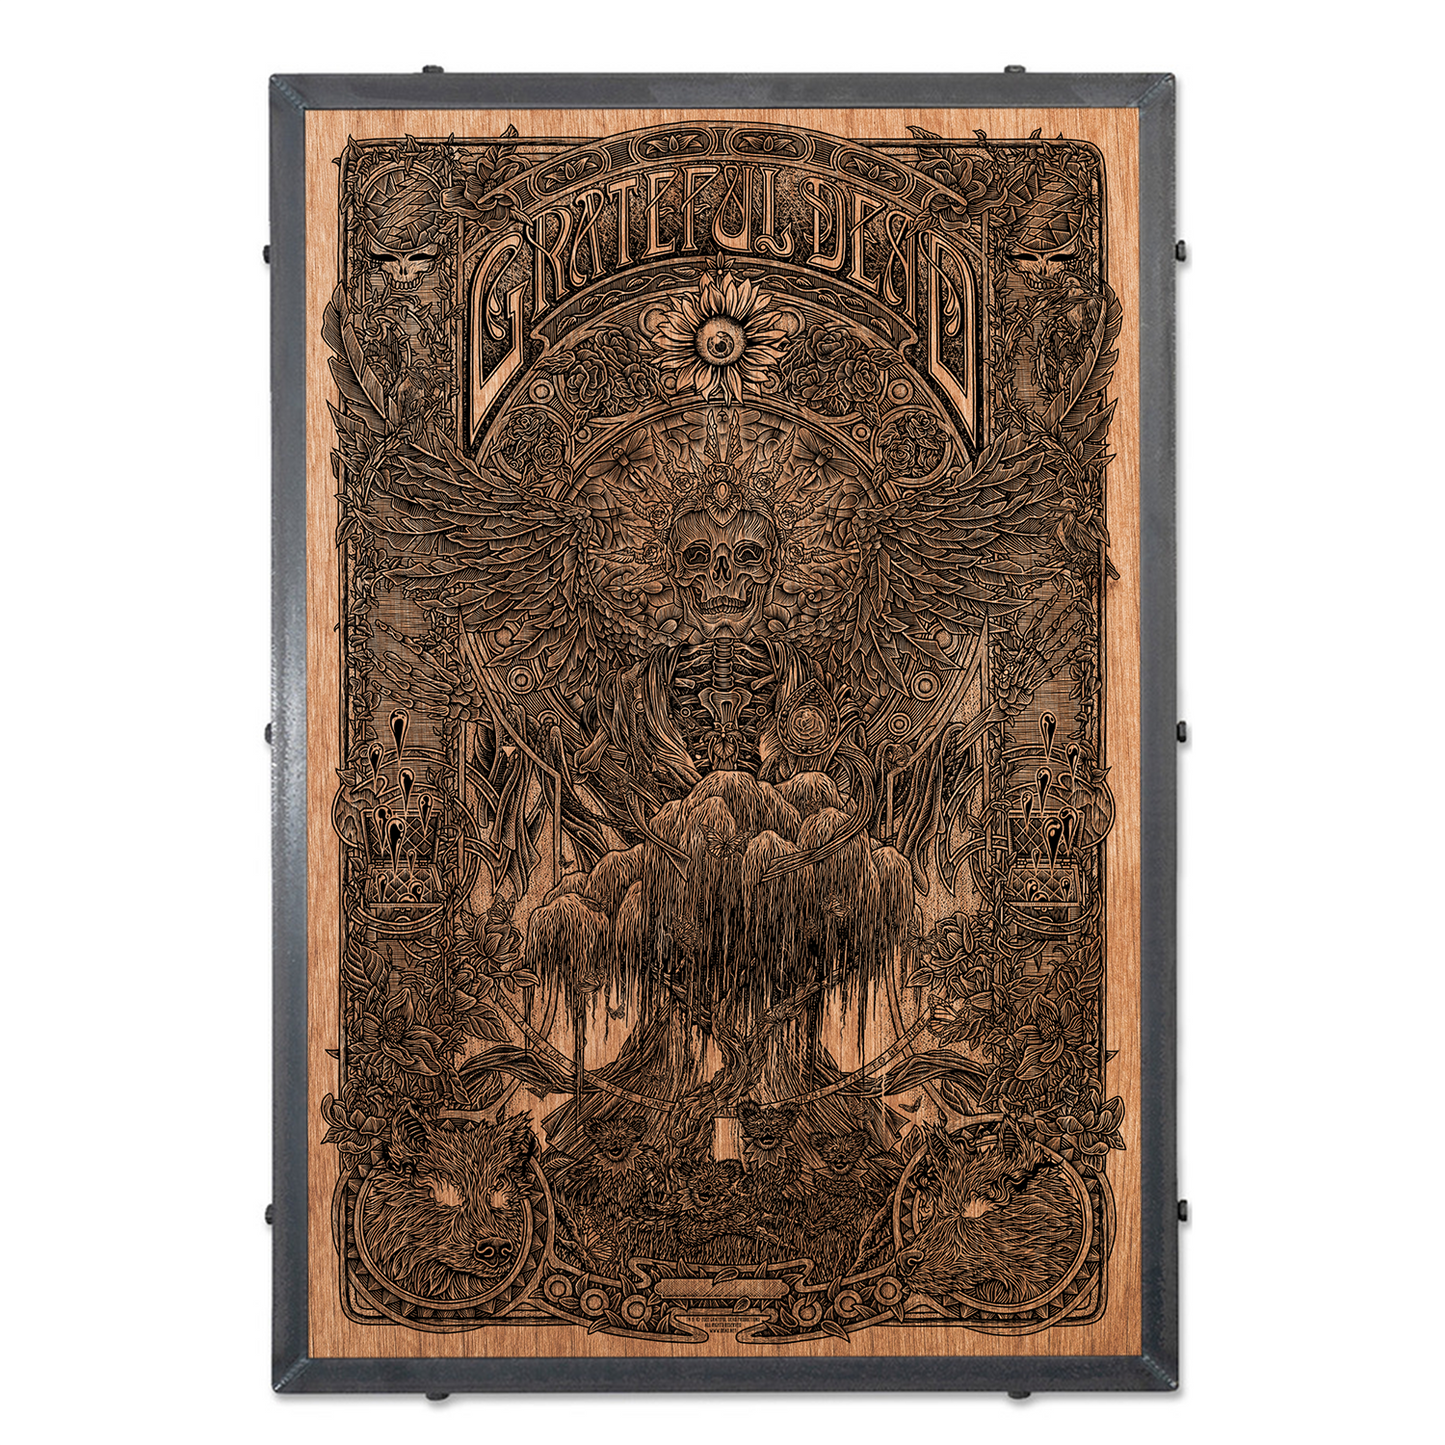 Luke Martin "Grateful Dead" Framed Wood Veneer